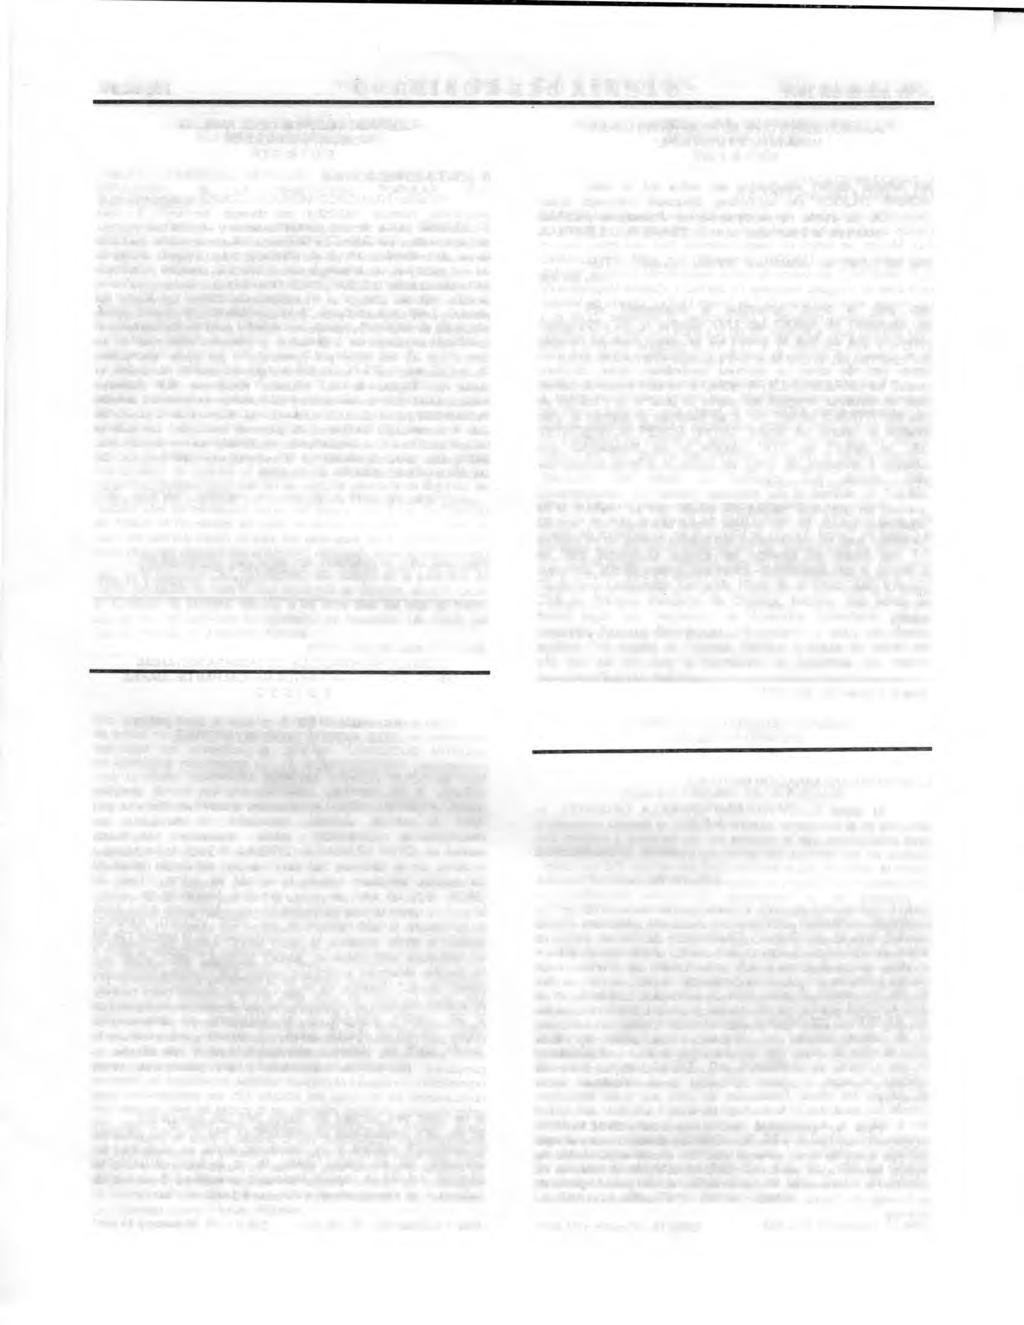 Página 20 "GACETA DEL GOBIERNO" 30 de marzo del 2001 JUZGADO 4 CIVIL DE PRIMERA INSTANCIA ECATEPEC DE MORELOS, MEX. CREDITO COMERCIAL MEXICANO, S.A. Y CONSTRUCTORA E IMPULSORA DE LA HABITACION POPULAR, S.